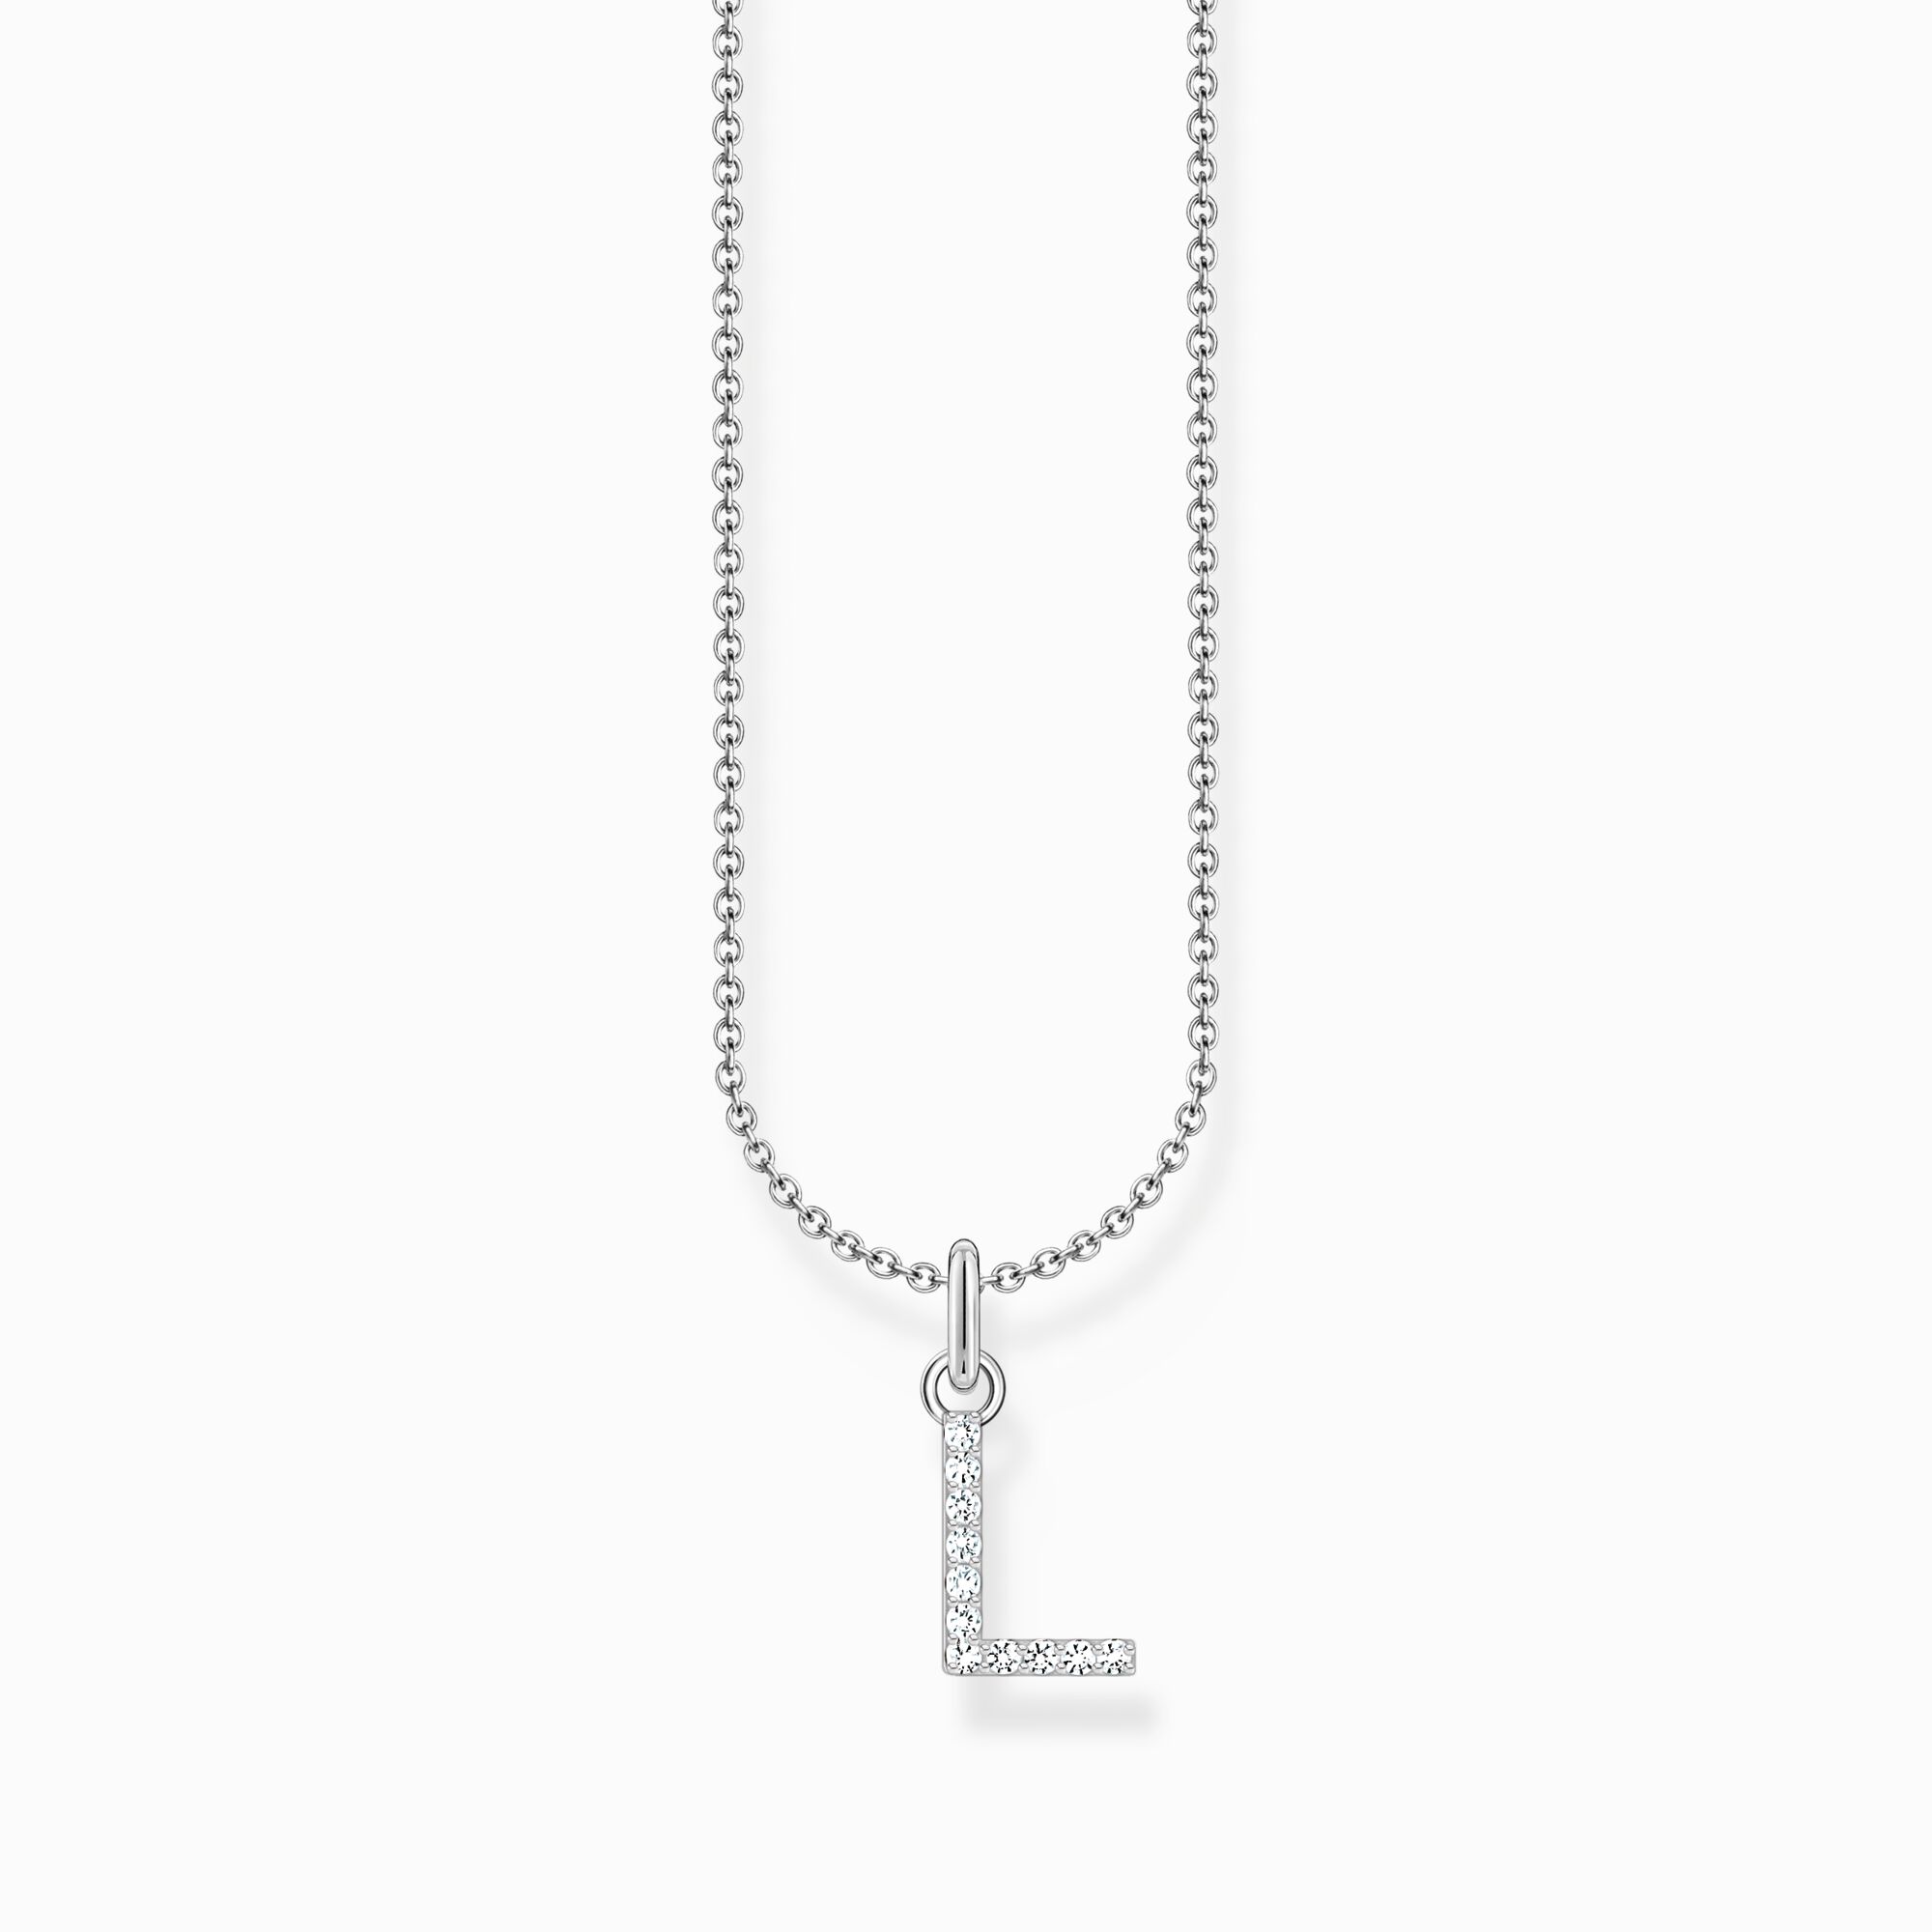 Halsband med bokstaven L, silver ur kollektionen Charming Collection i THOMAS SABO:s onlineshop